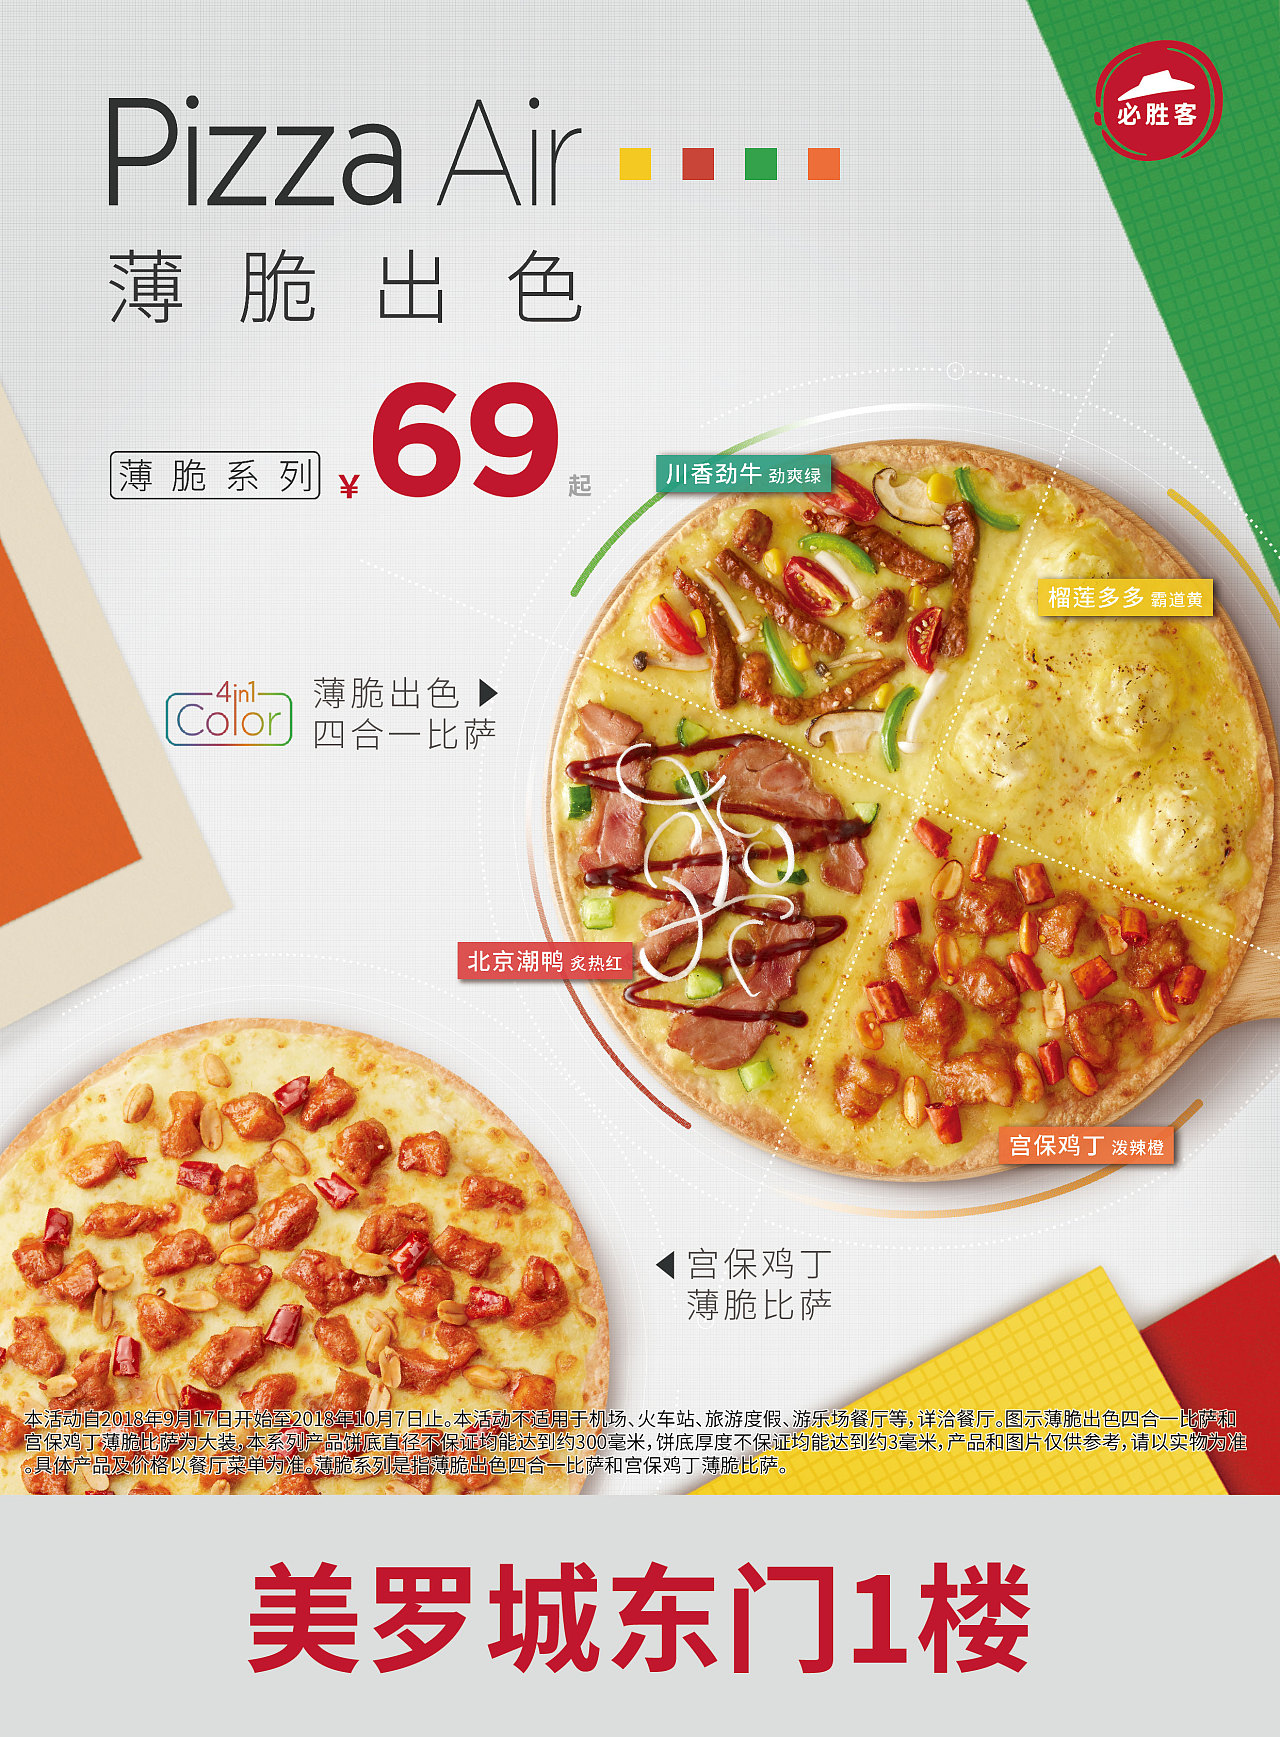 必胜客77元四个披萨-最新线报活动/教程攻略-0818团